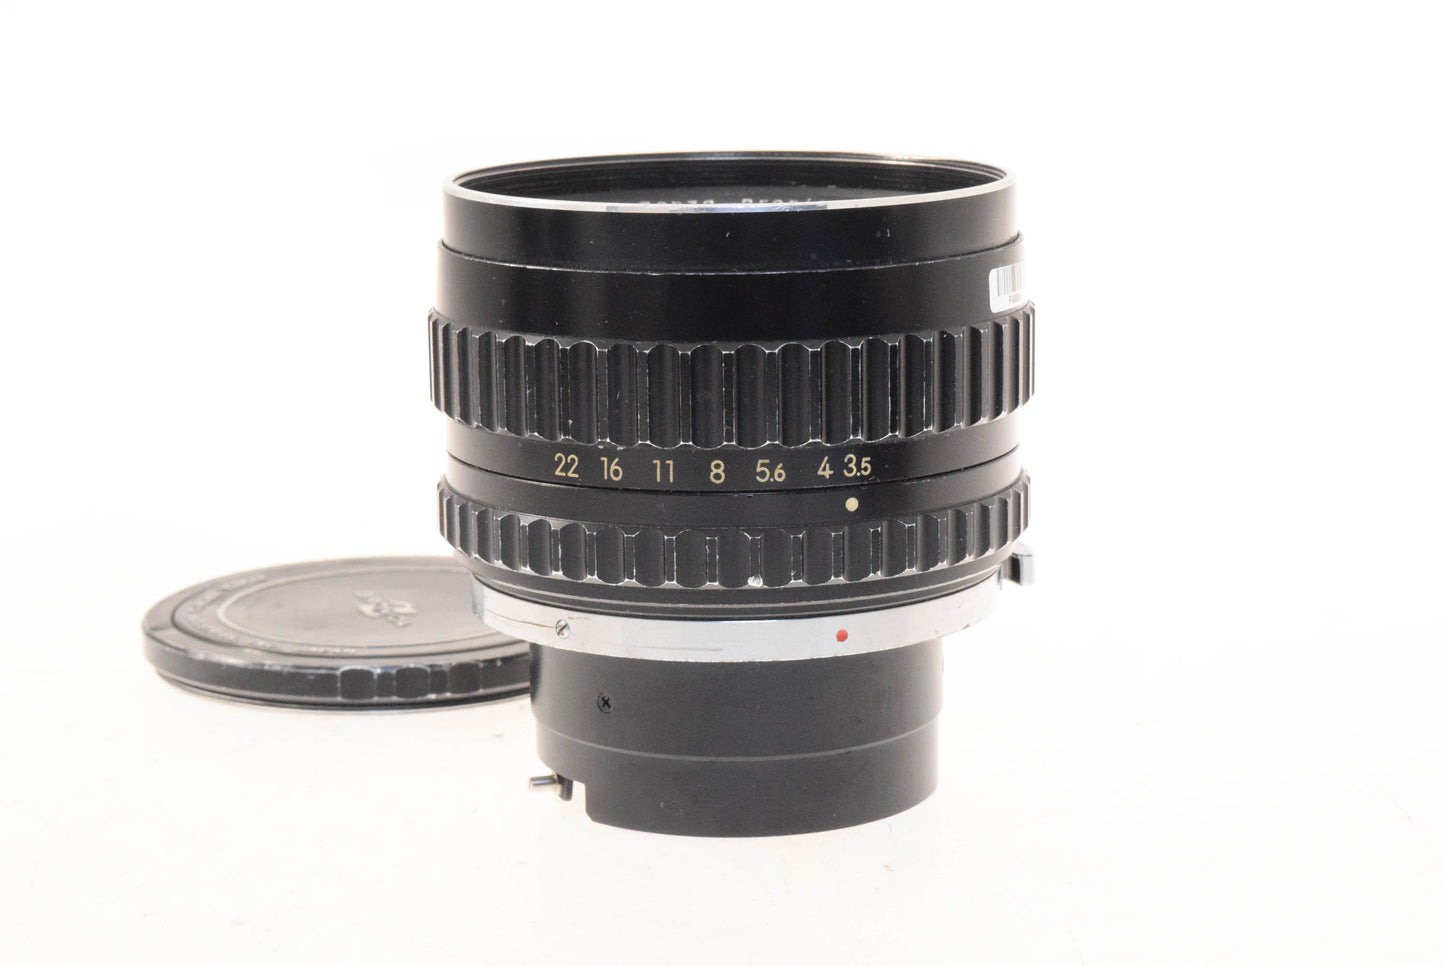 Zenza Bronica 150mm f3.5 Zenzanon MC - Lens